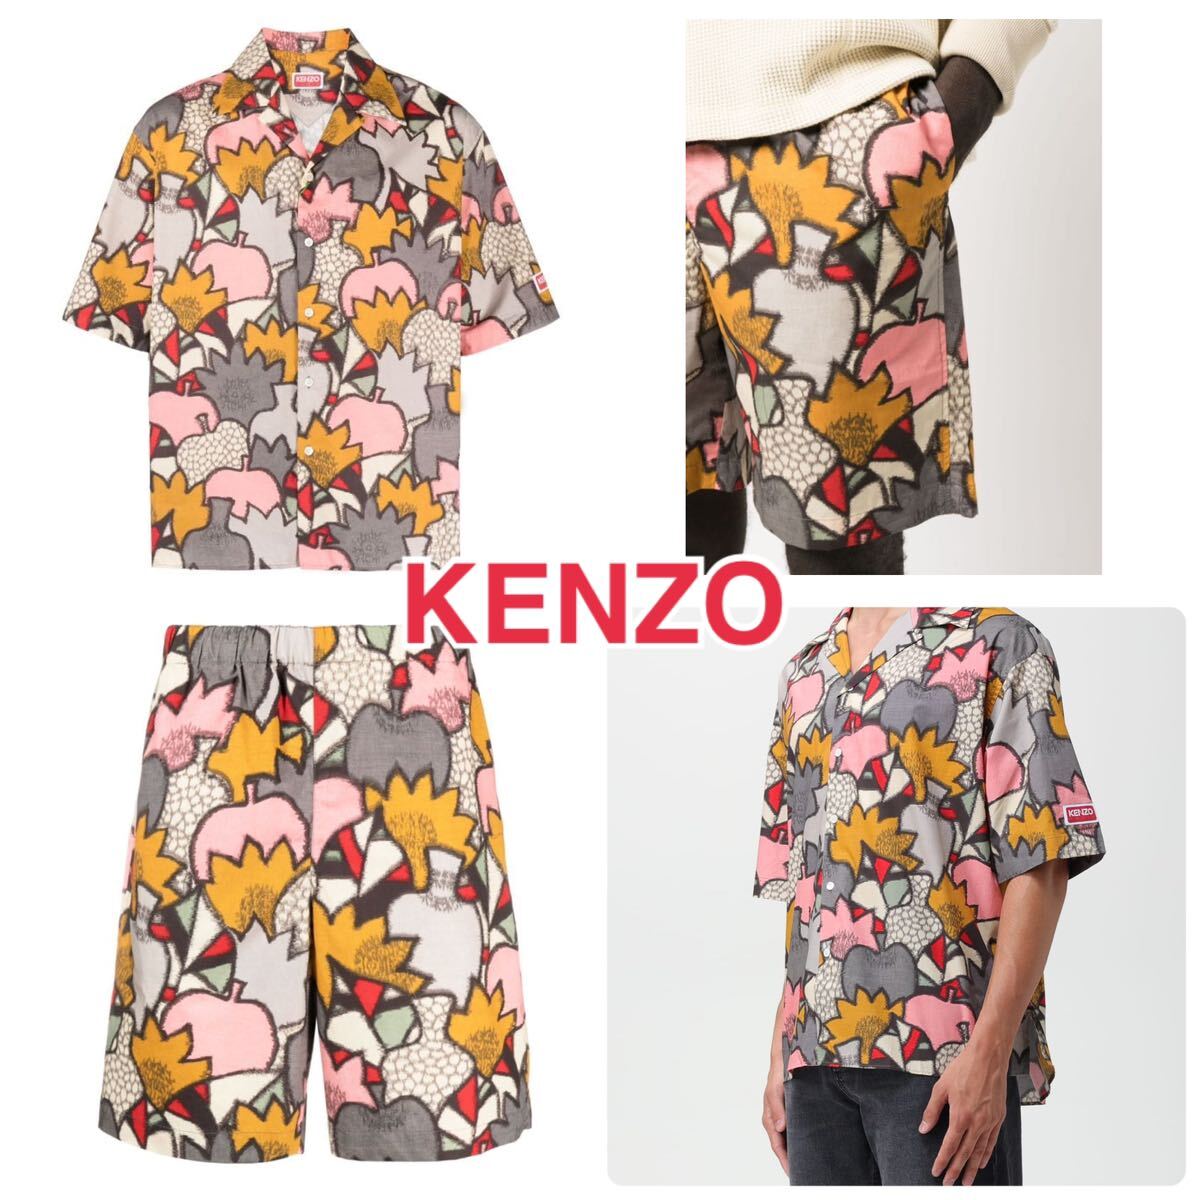 本物 美品 正規品 KENZO ケンゾー セットアップ 上下 Sサイズ メンズ Kimono Camo シャツ パンツ ショートパンツ 半袖シャツ 上下セット